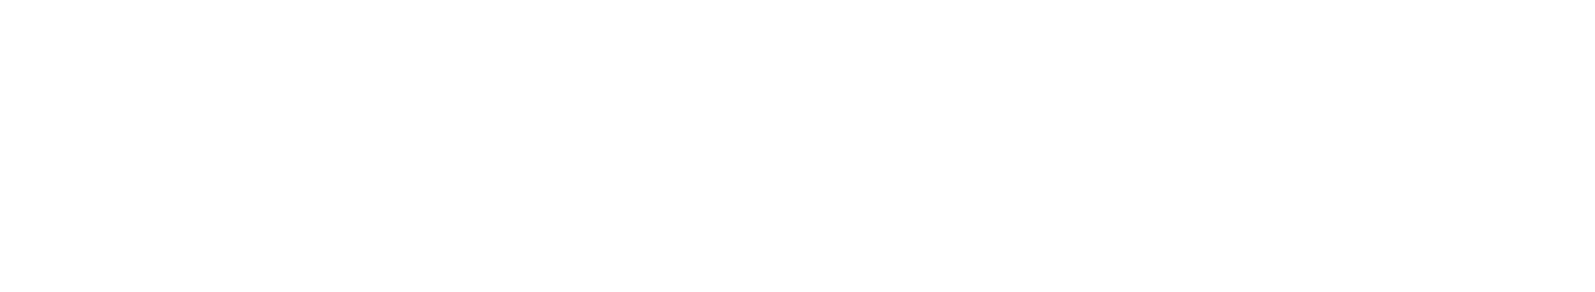 China Construction Bank logo grand pour les fonds sombres (PNG transparent)